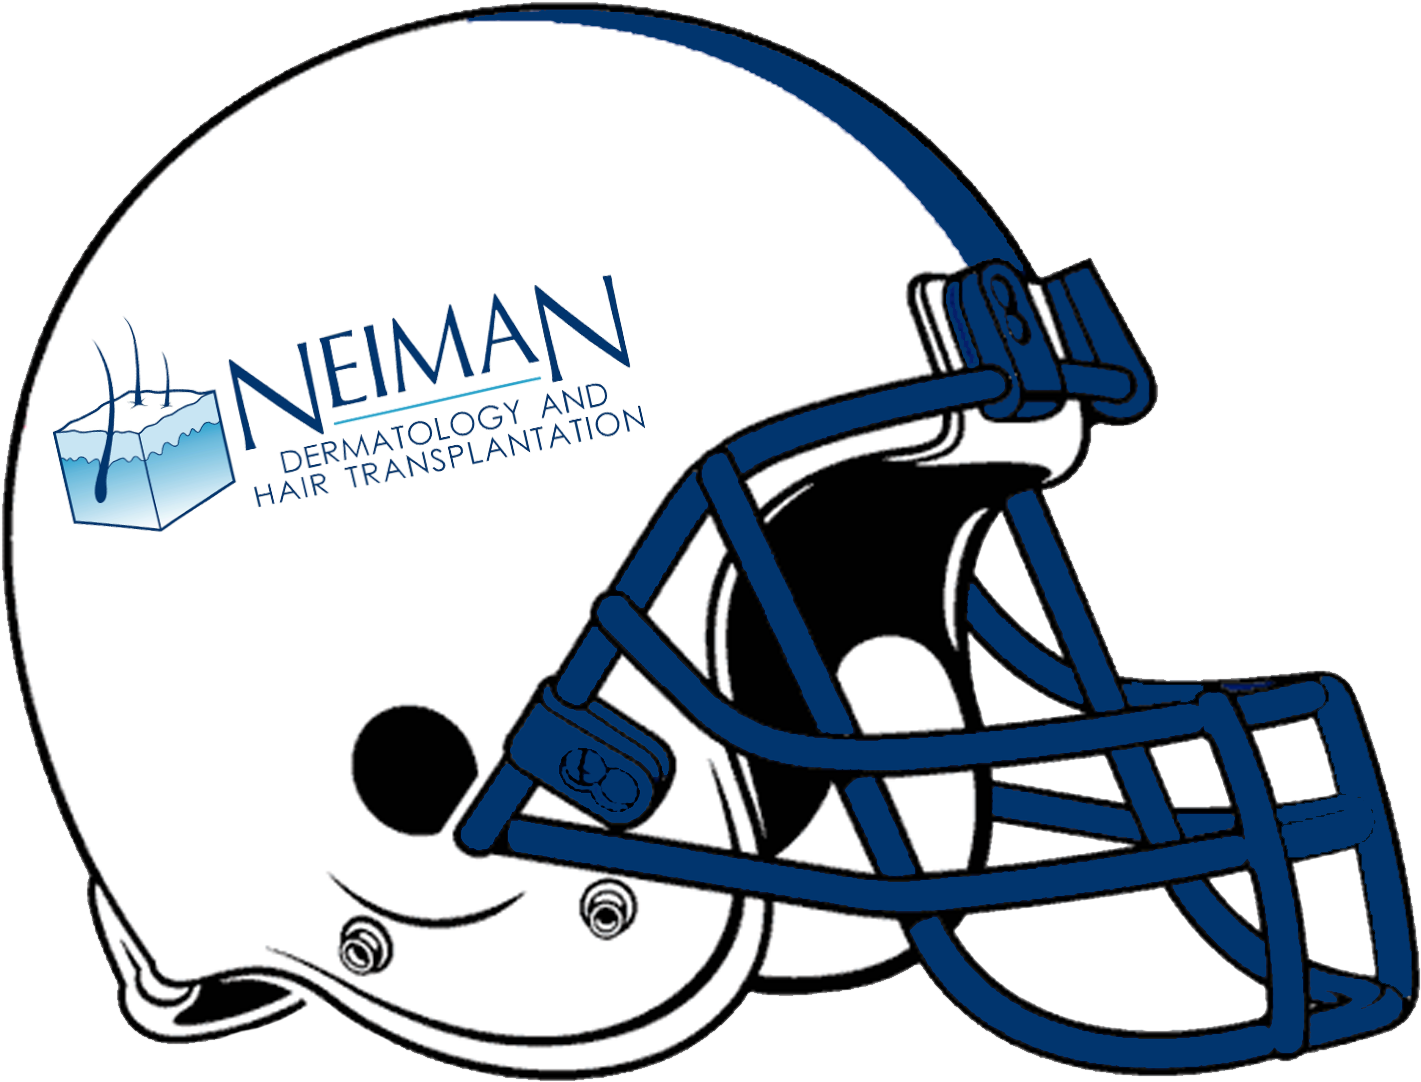 Neiman Football Helmet - Florida State Football Helmet (1500x1182)